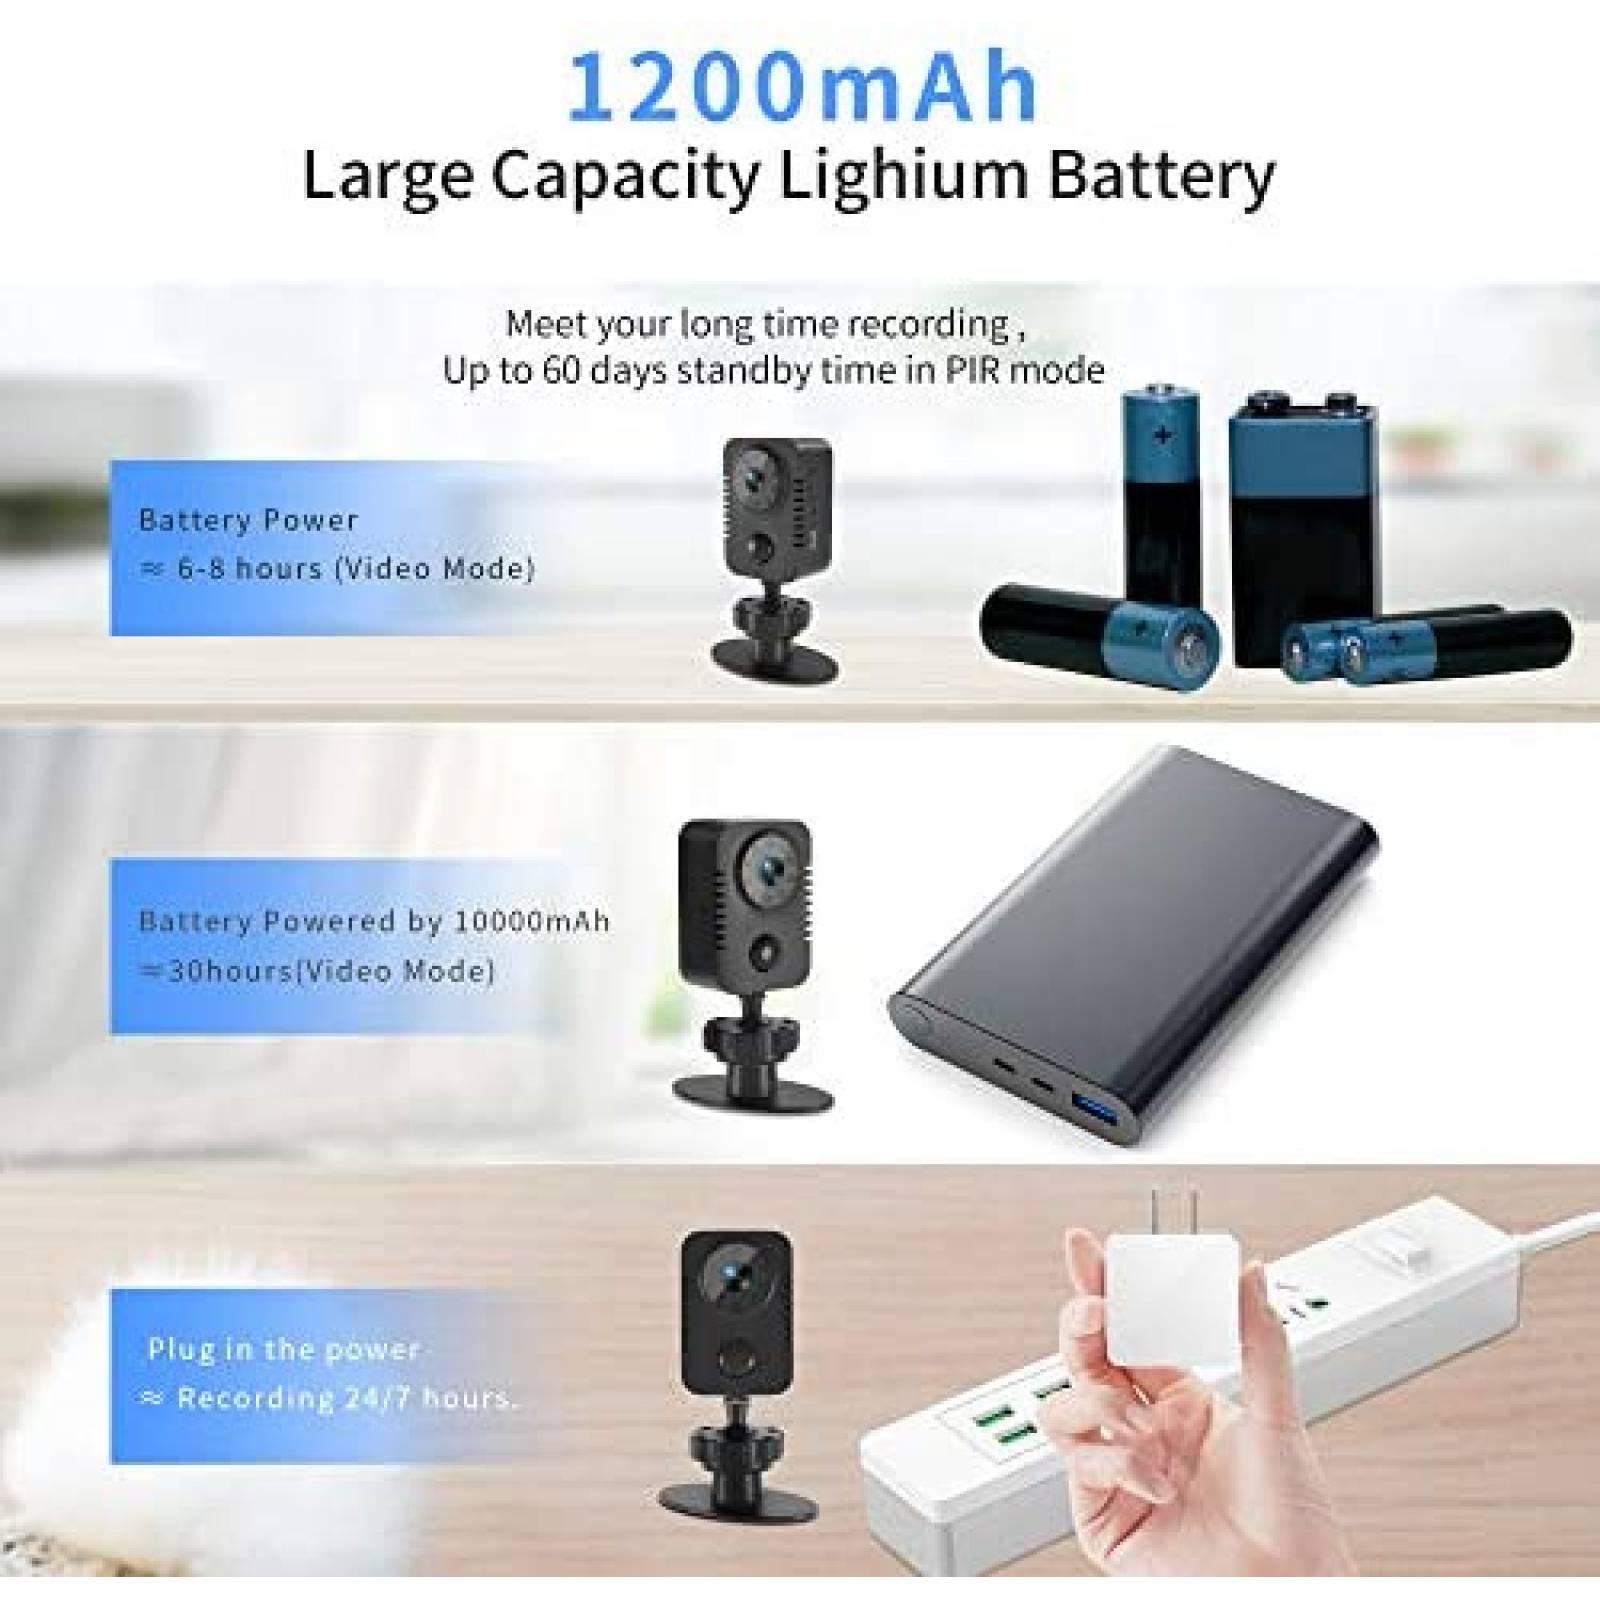 MD29 Mini cámara de seguridad - Videocámara Full HD Detección de